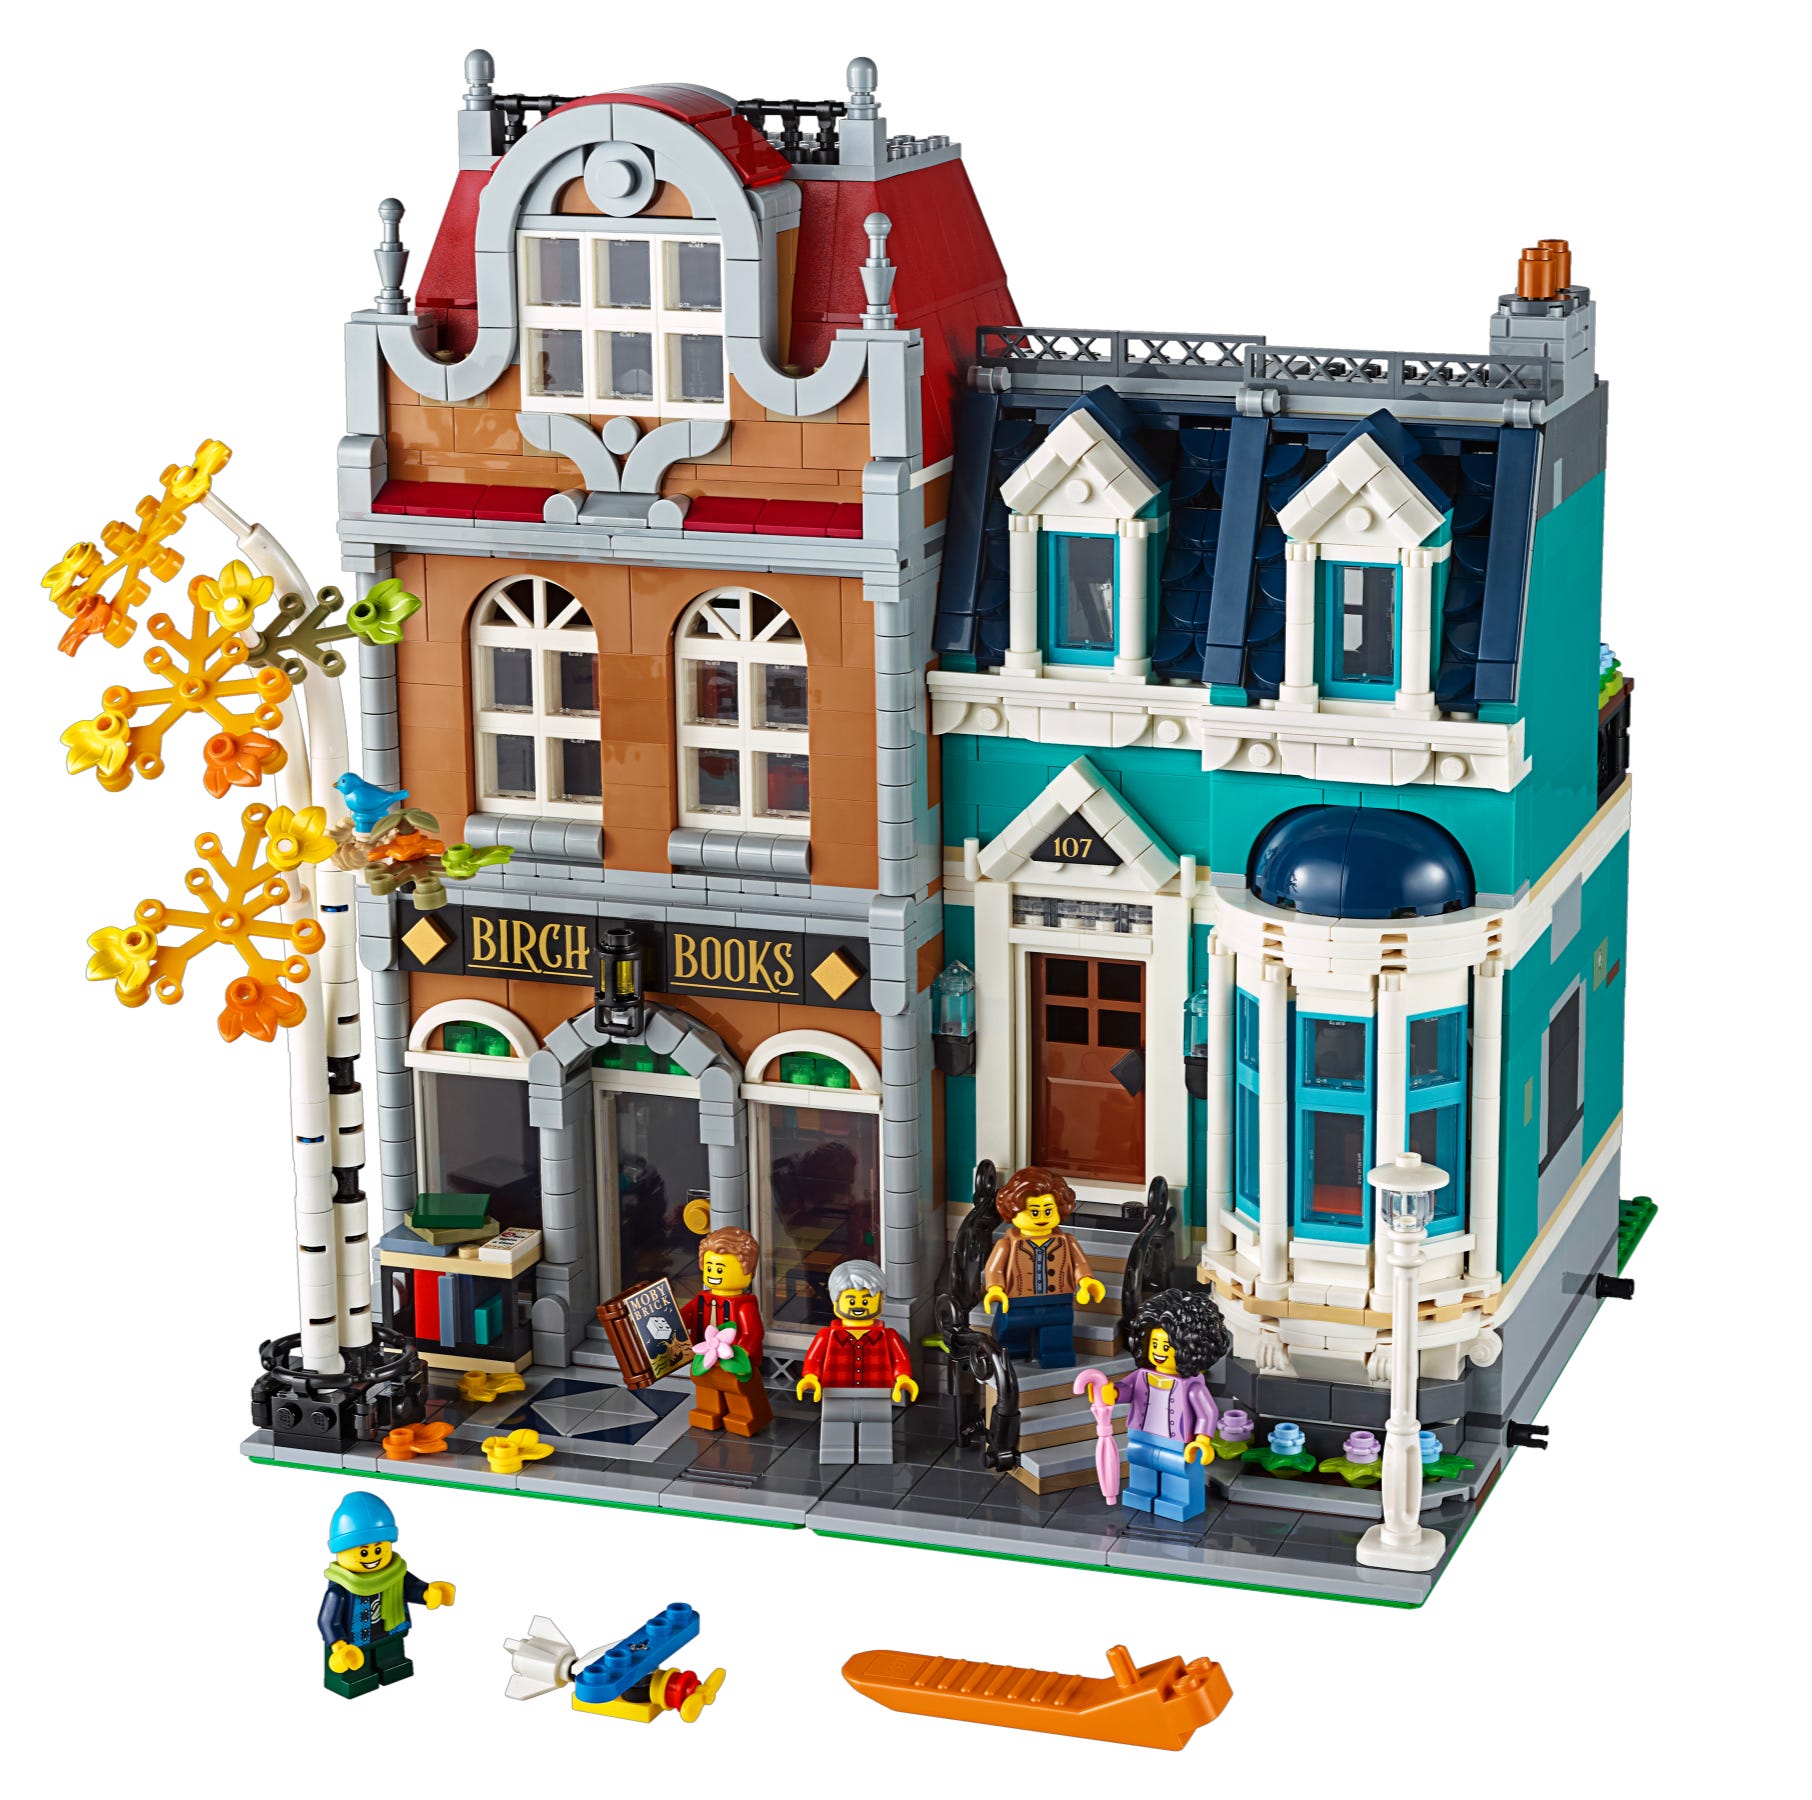 Buchhandlung von LEGO